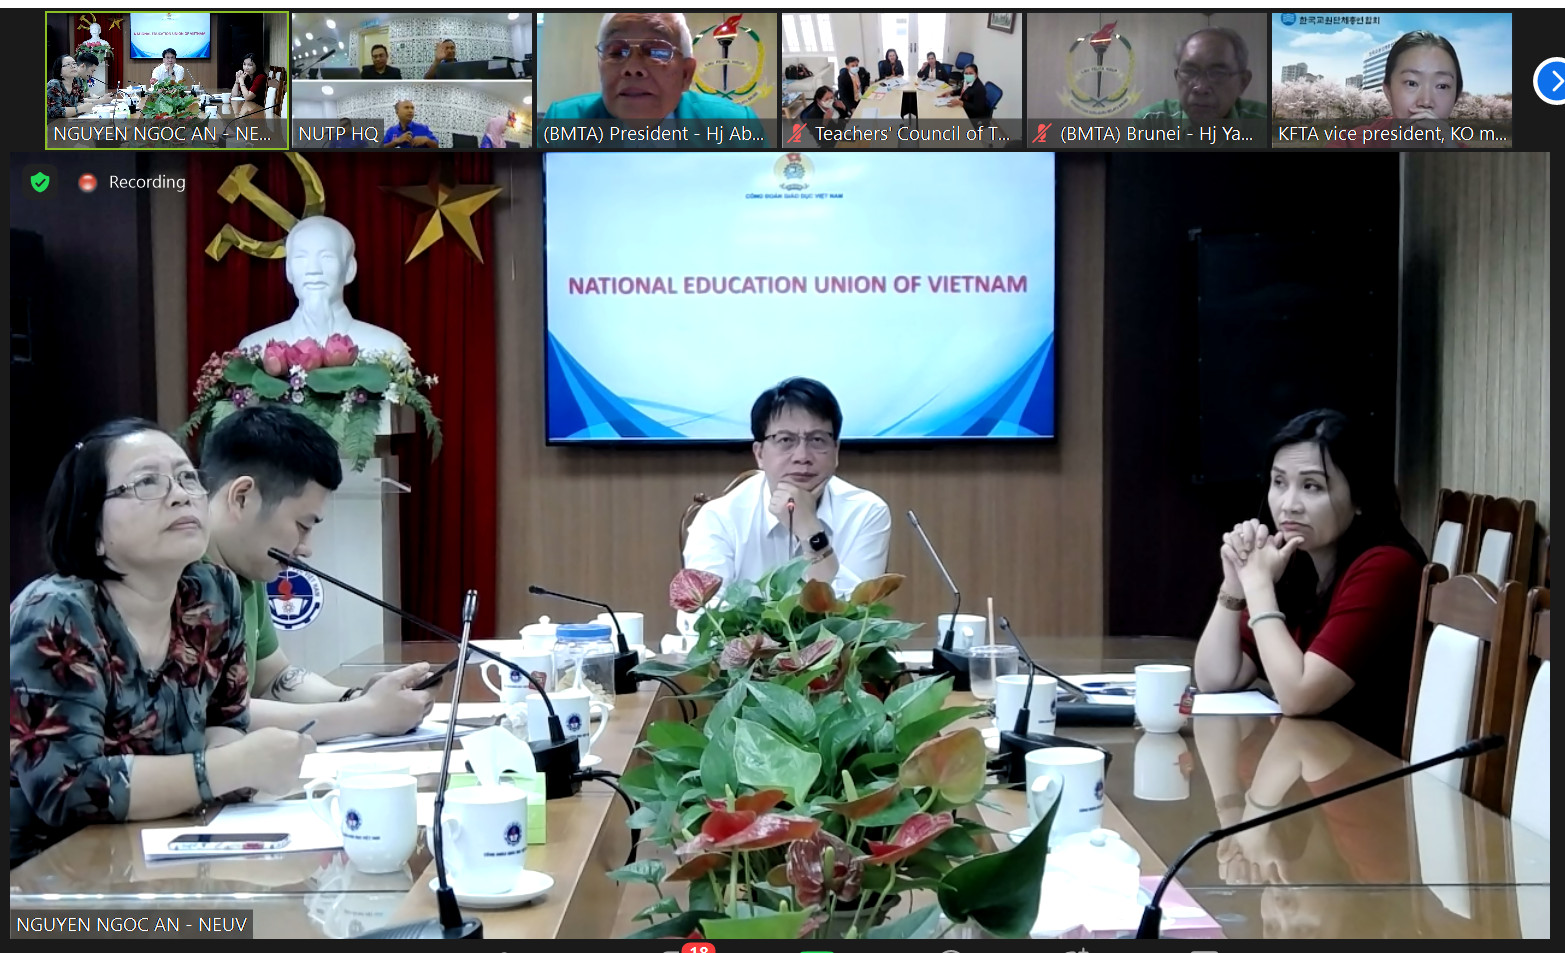 Tiến sĩ Nguyễn Ngọc Ân, Chủ tịch Công đoàn Giáo dục Việt Nam tham dự  Hội nghị trưởng đoàn Hội đồng Giáo giới các nước ASEAN và Hàn Quốc  lần thứ 37 